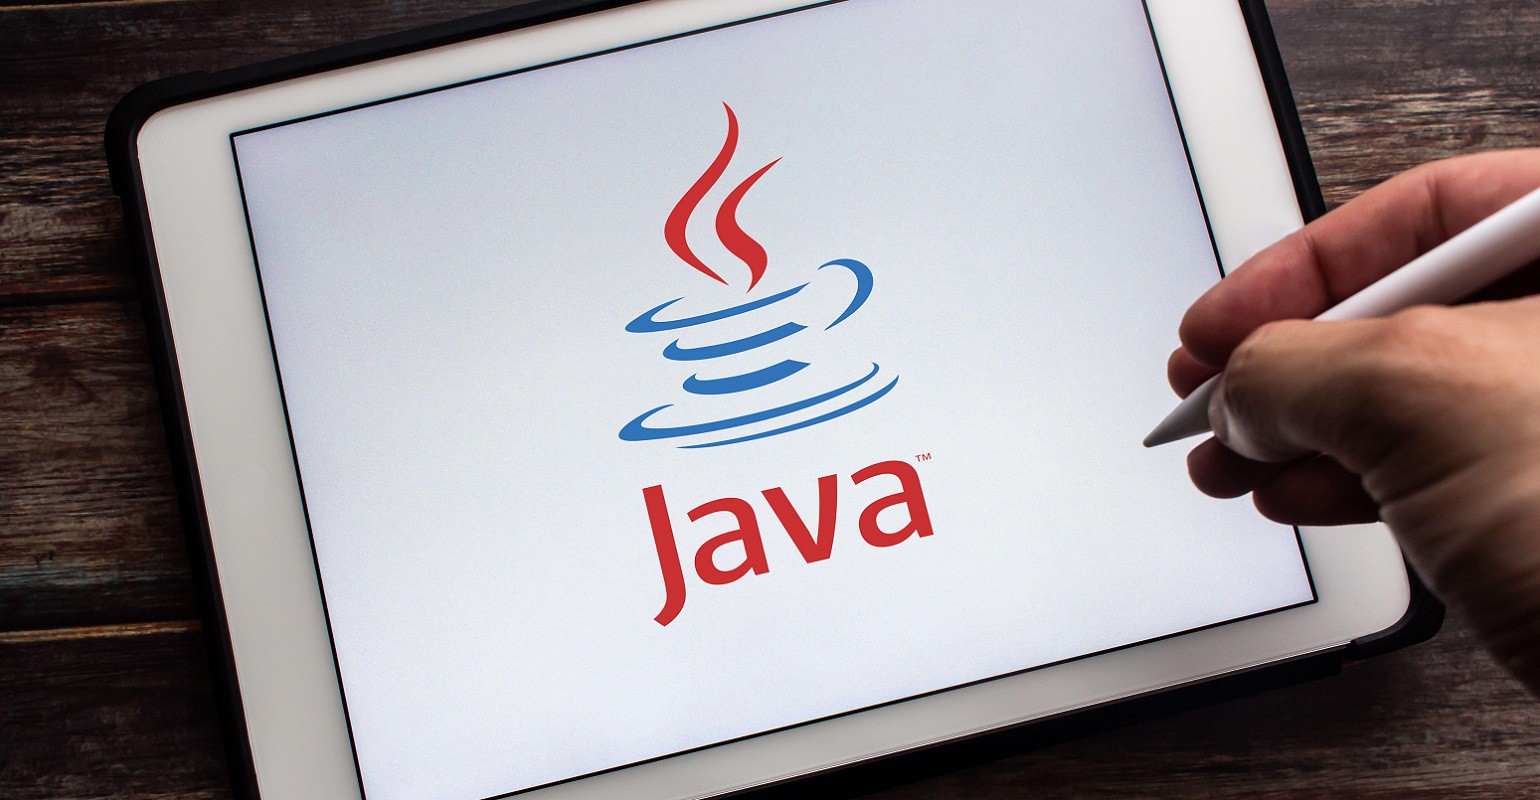 Java là gì? Tổng quan về ngôn ngữ lập trình Java cho người mới - Fptshop.com.vn